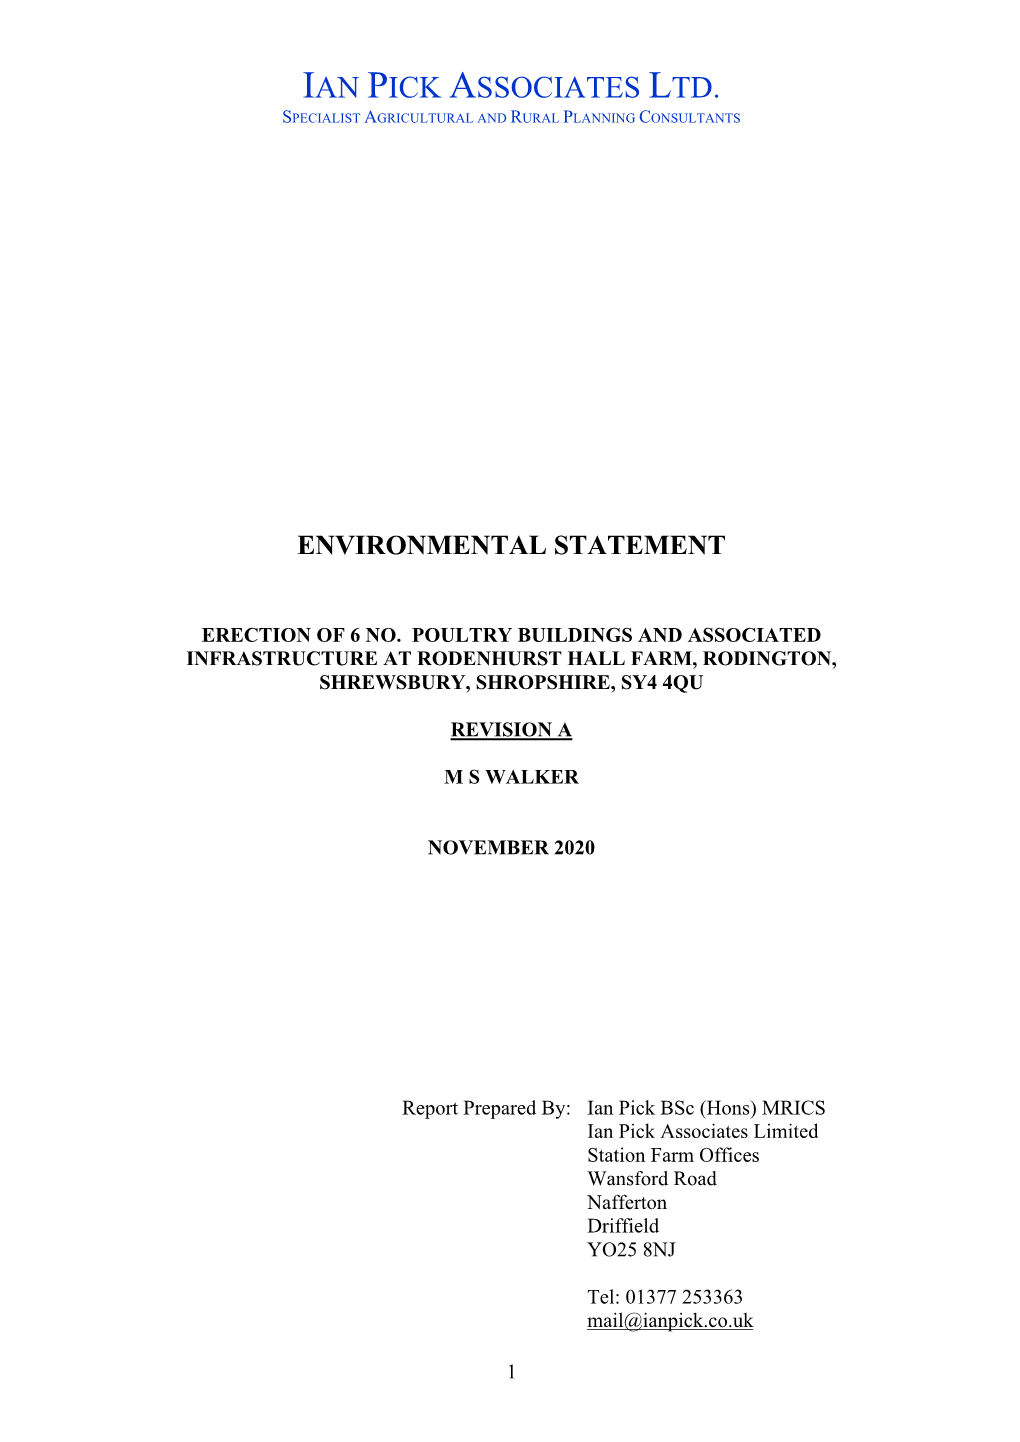 Environmental Statement REV A